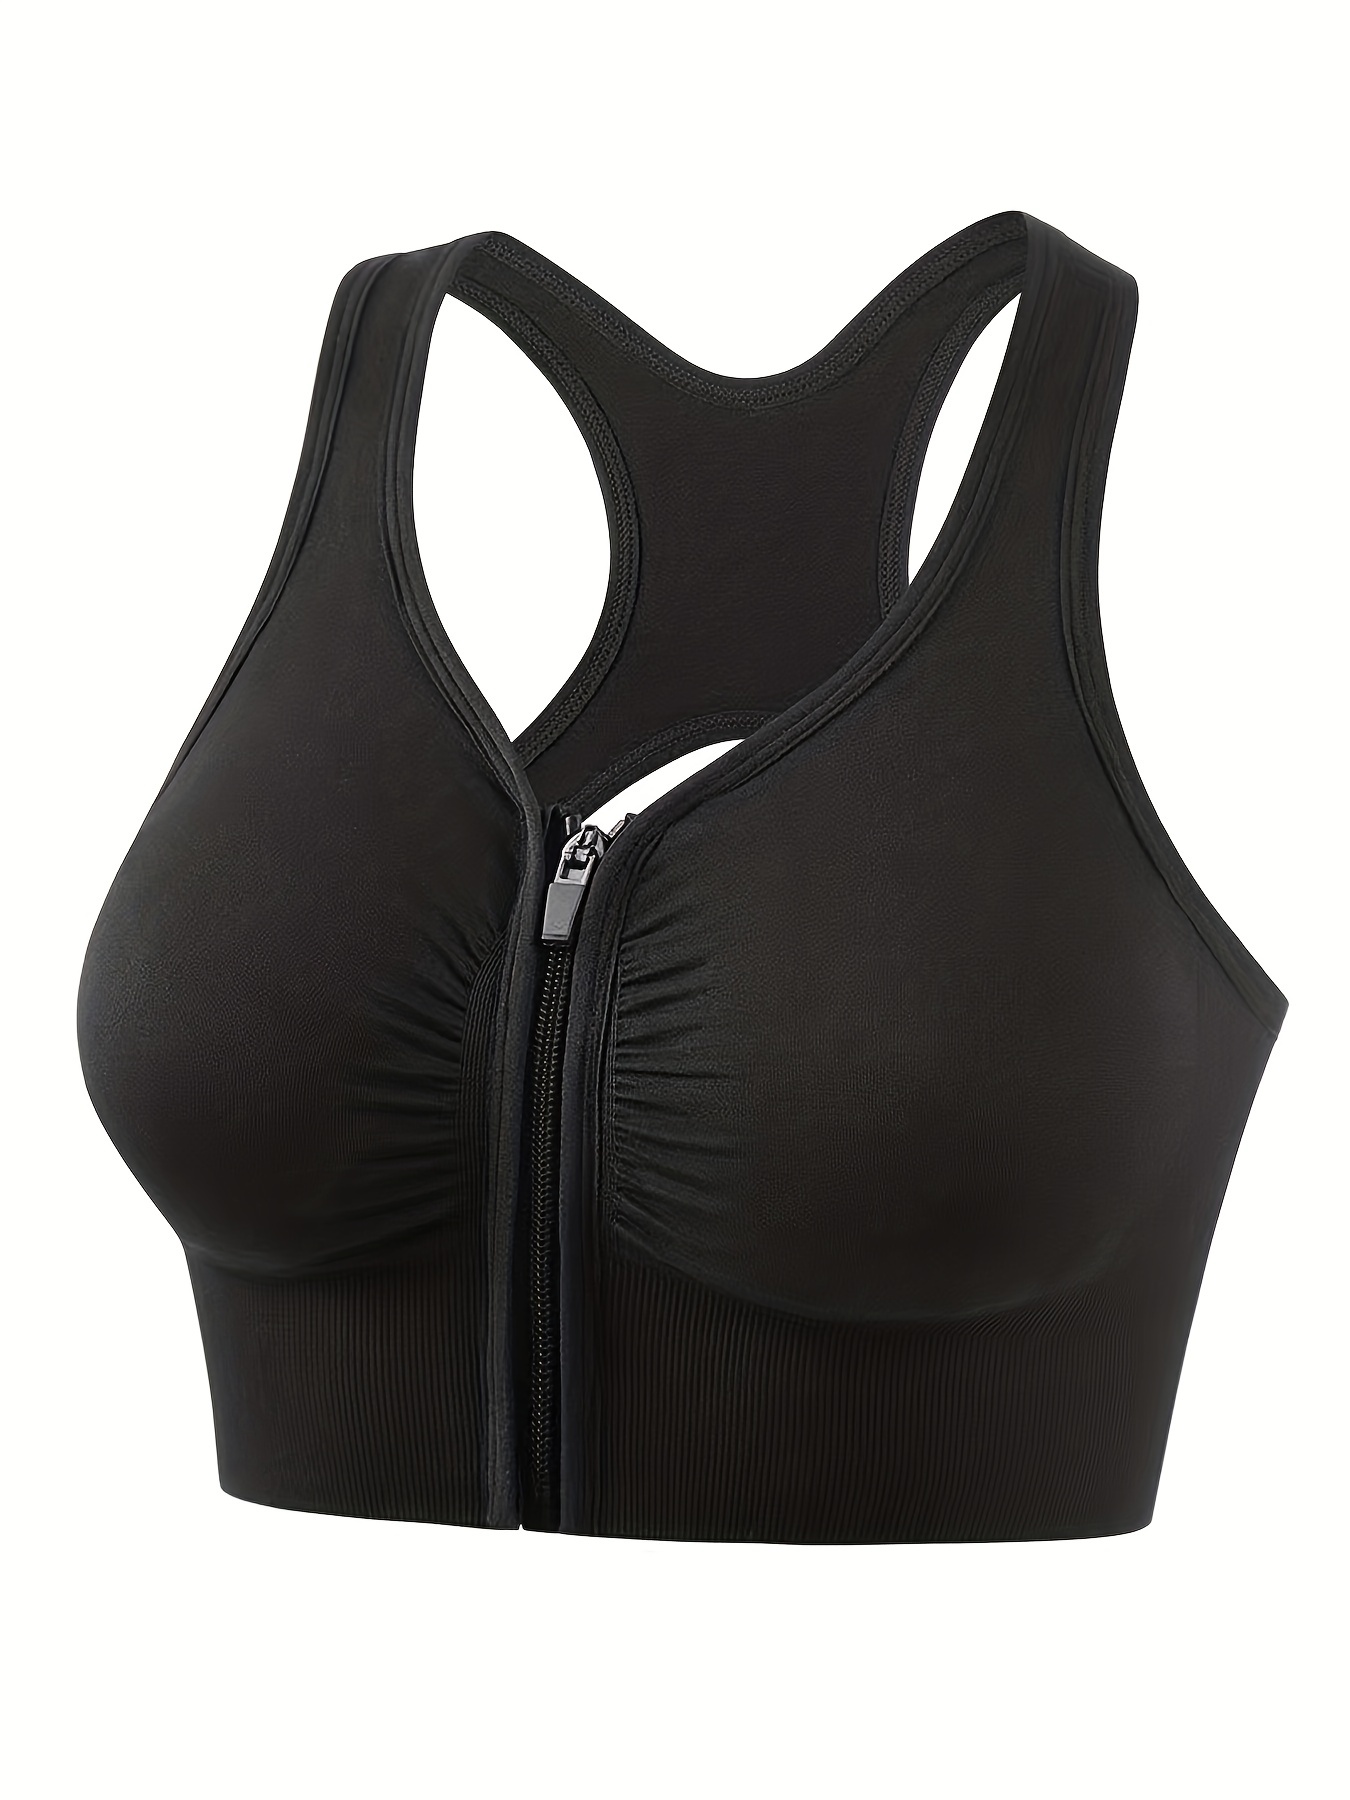 xipcokm Women's Sport Bra Front Zip Wireless Shockproof Comfy Thin Bras  Bralette Workout Running Solid Lightweight Underwear : : Clothing